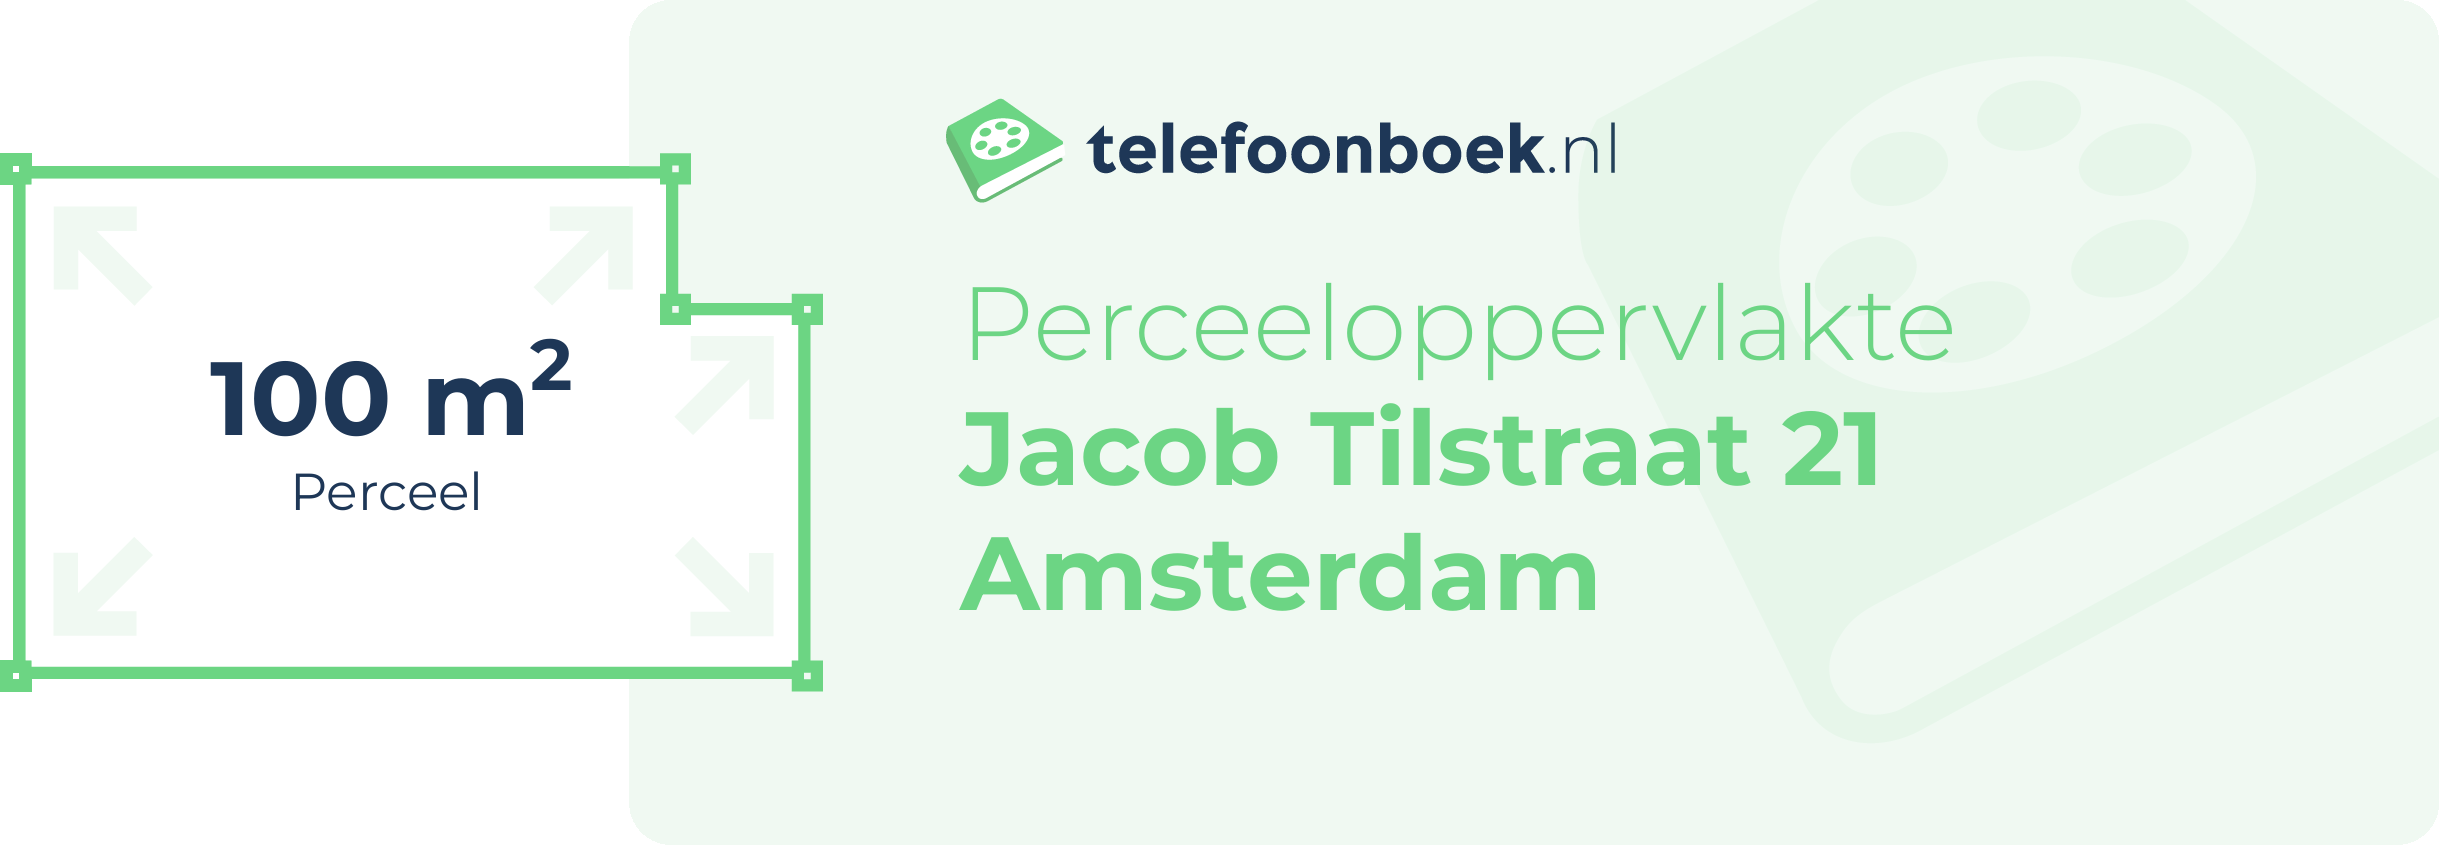 Perceeloppervlakte Jacob Tilstraat 21 Amsterdam